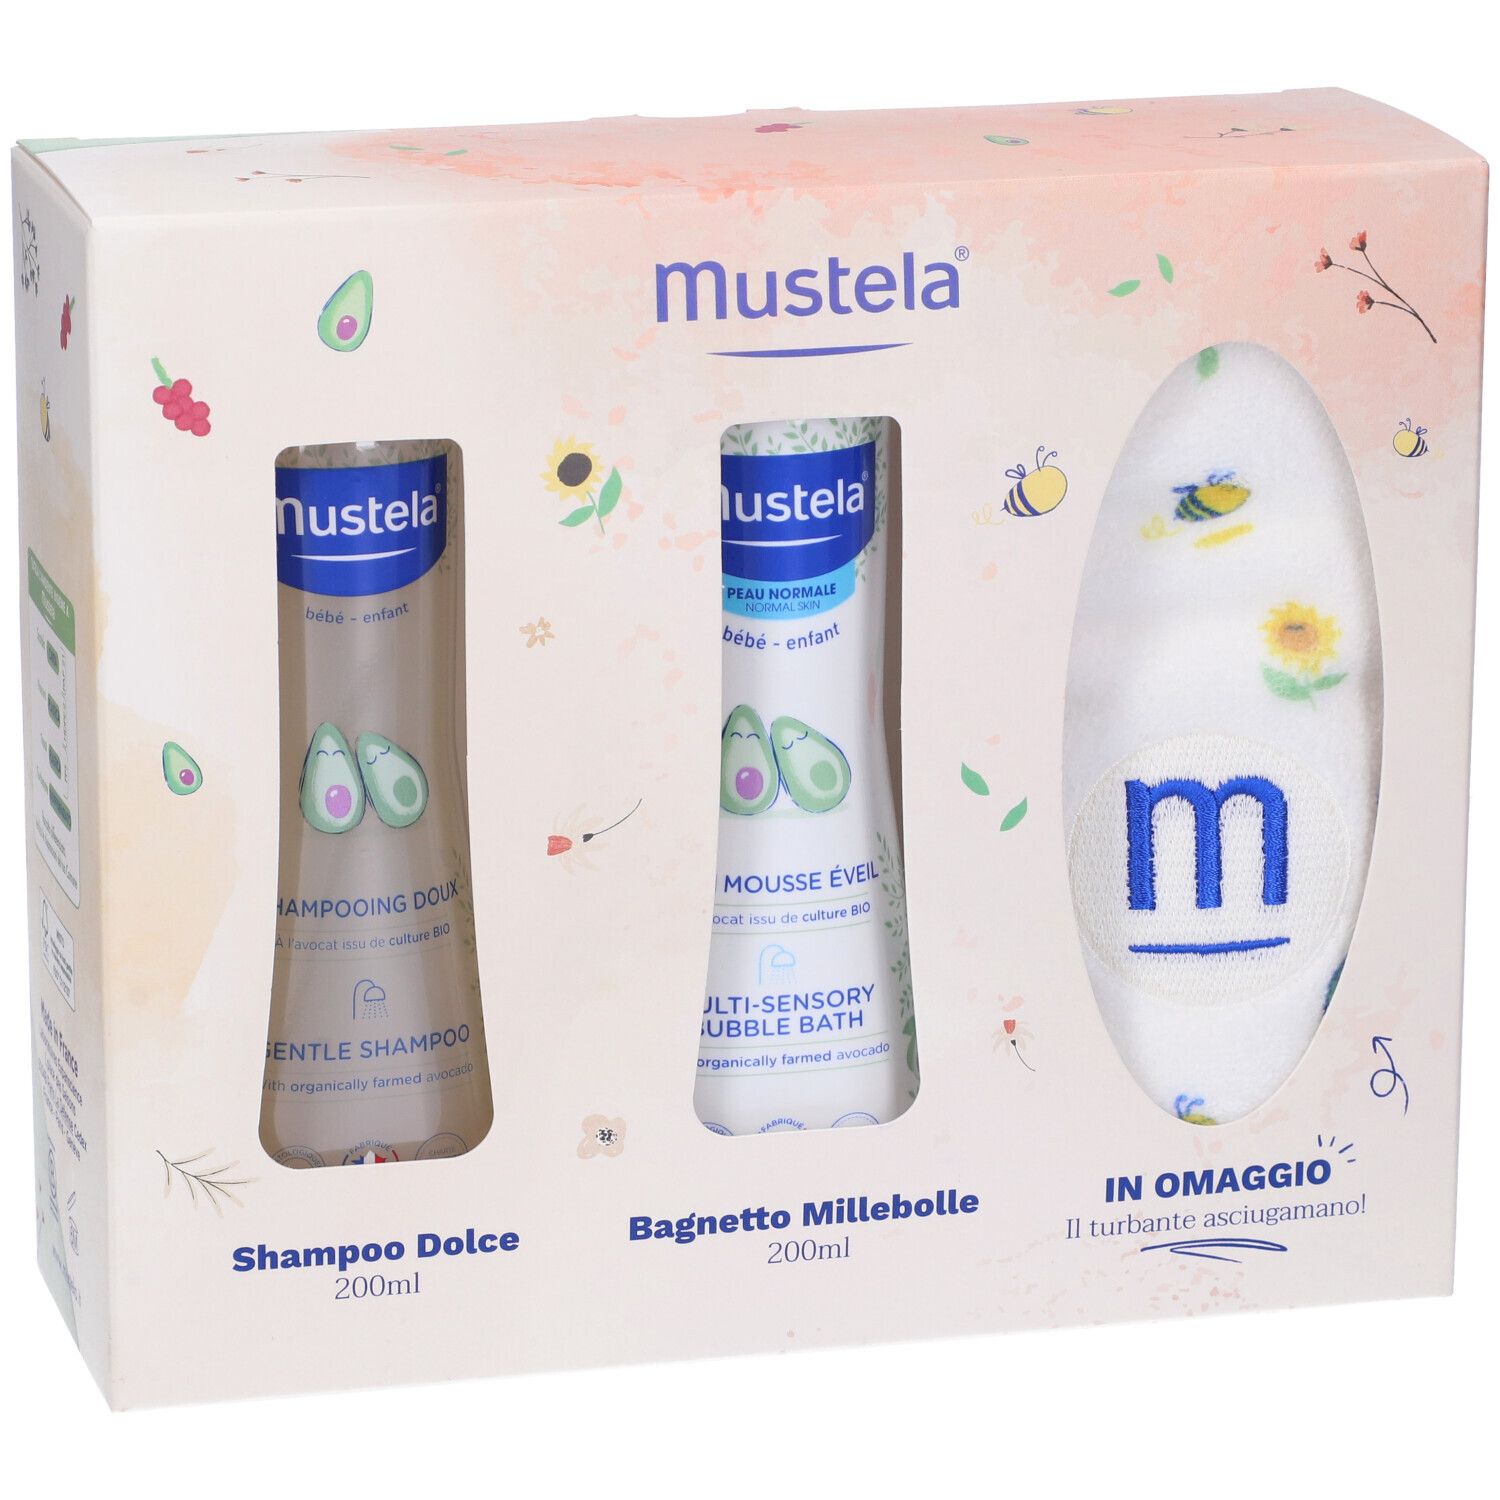 Mustela Cofanetto Shampoo Dolce + Bagnetto Millebolle + Turbante  Asciugamano in Omaggio 1 pz